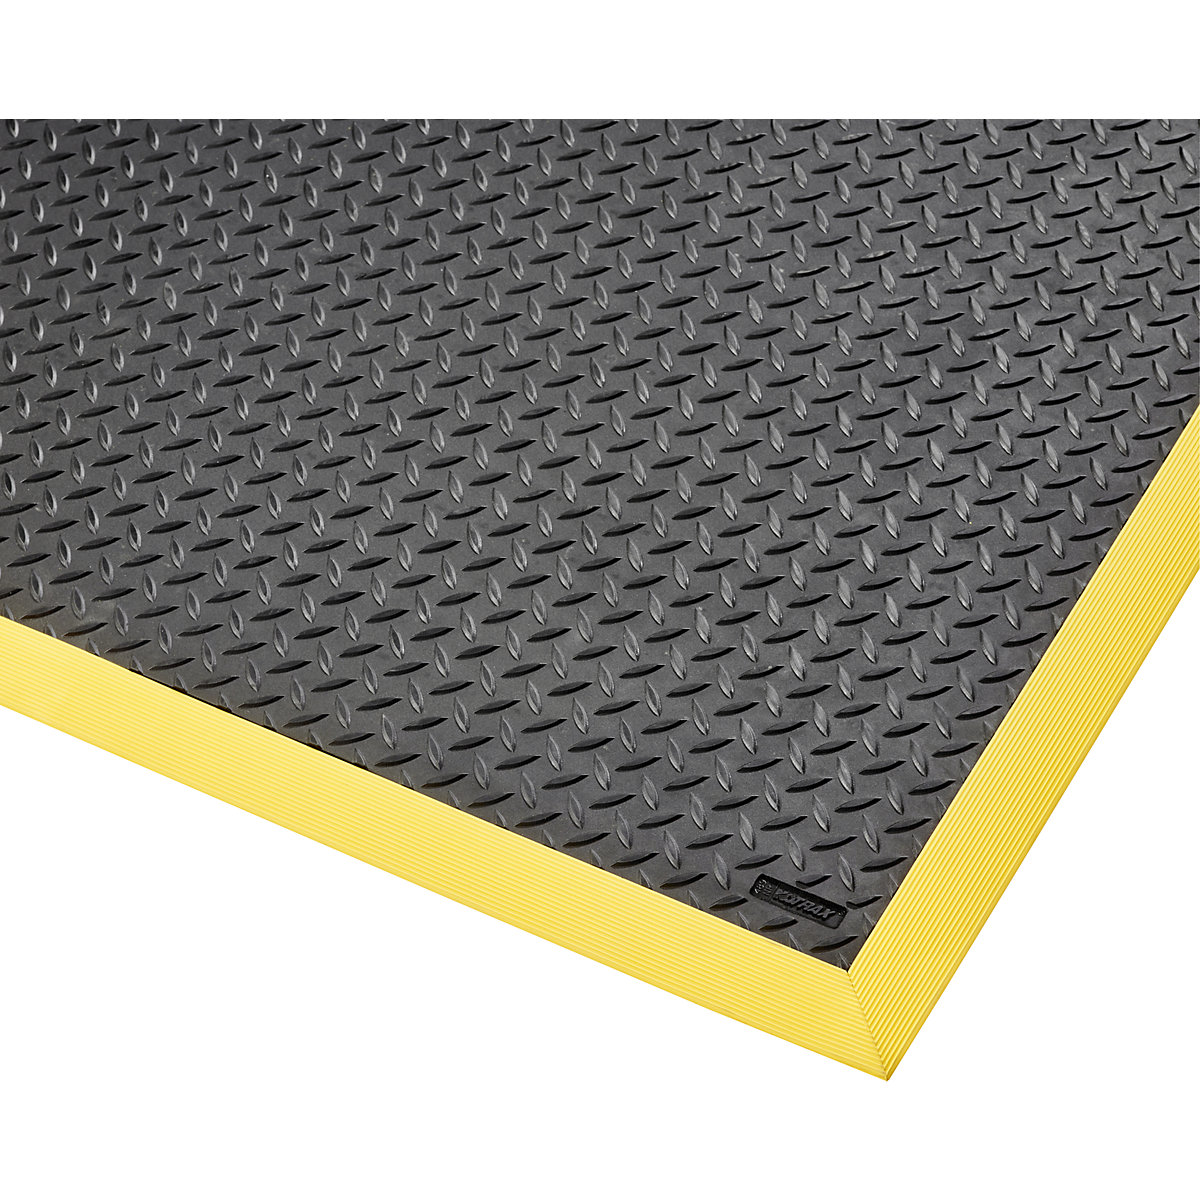 Esteira anticansaço Cushion Flex® – NOTRAX, CxL 2100 x 910 mm, preto/amarelo-16